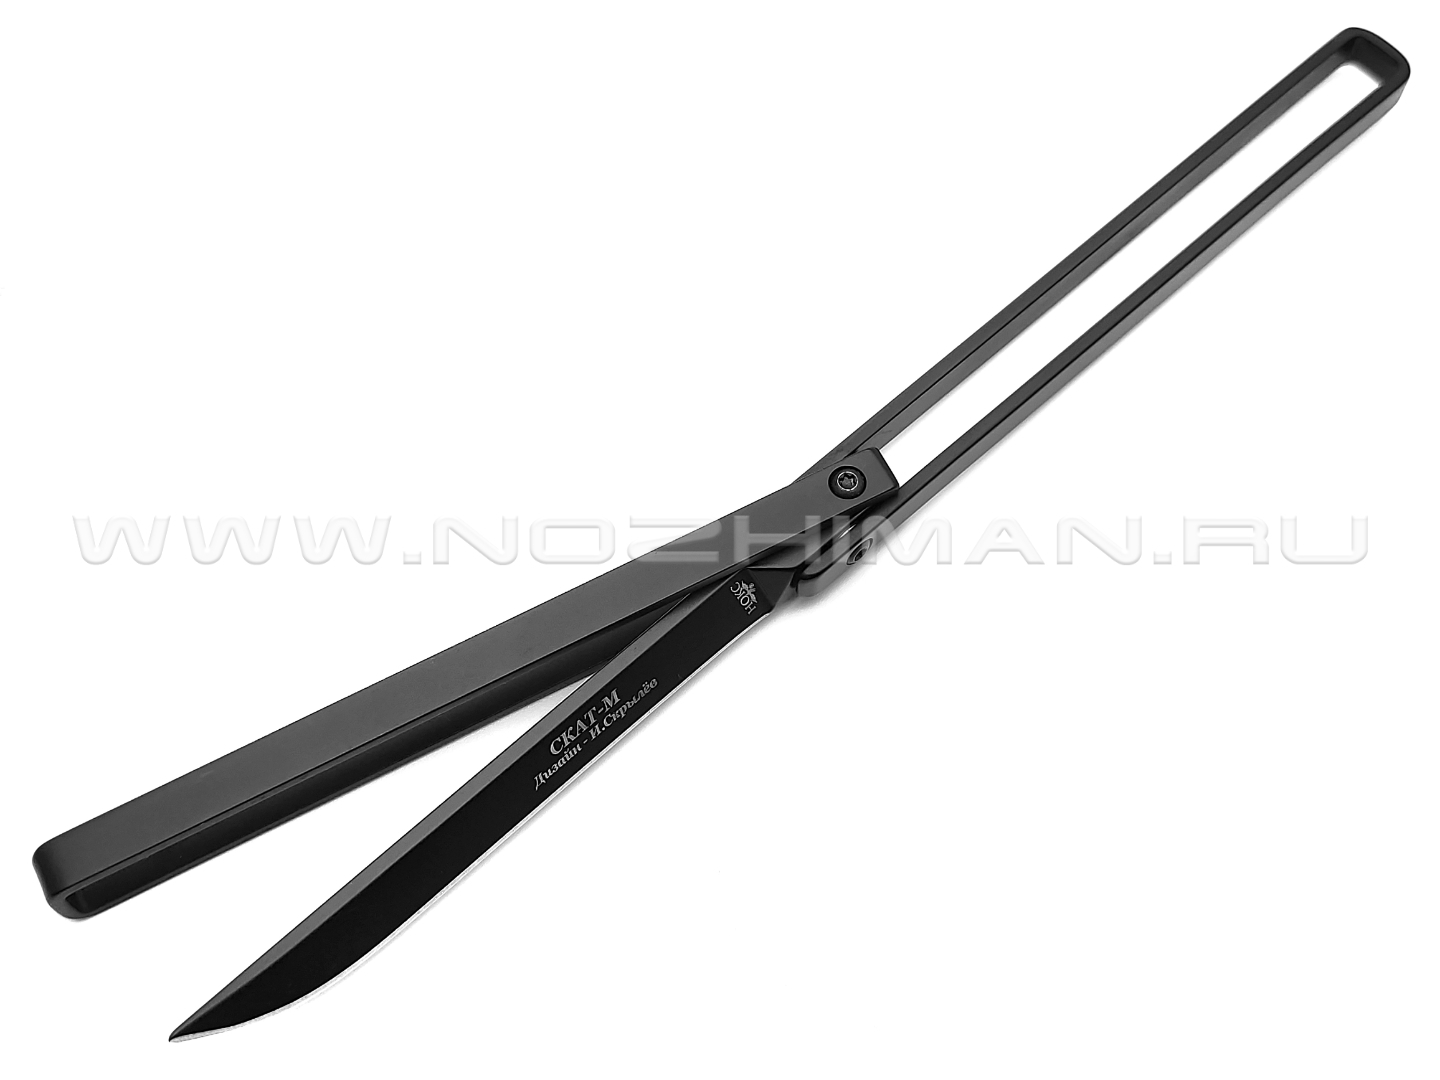 Нокс складной рамочный нож Скат-М 314-740001 сталь 440 black, рукоять Stainless steel